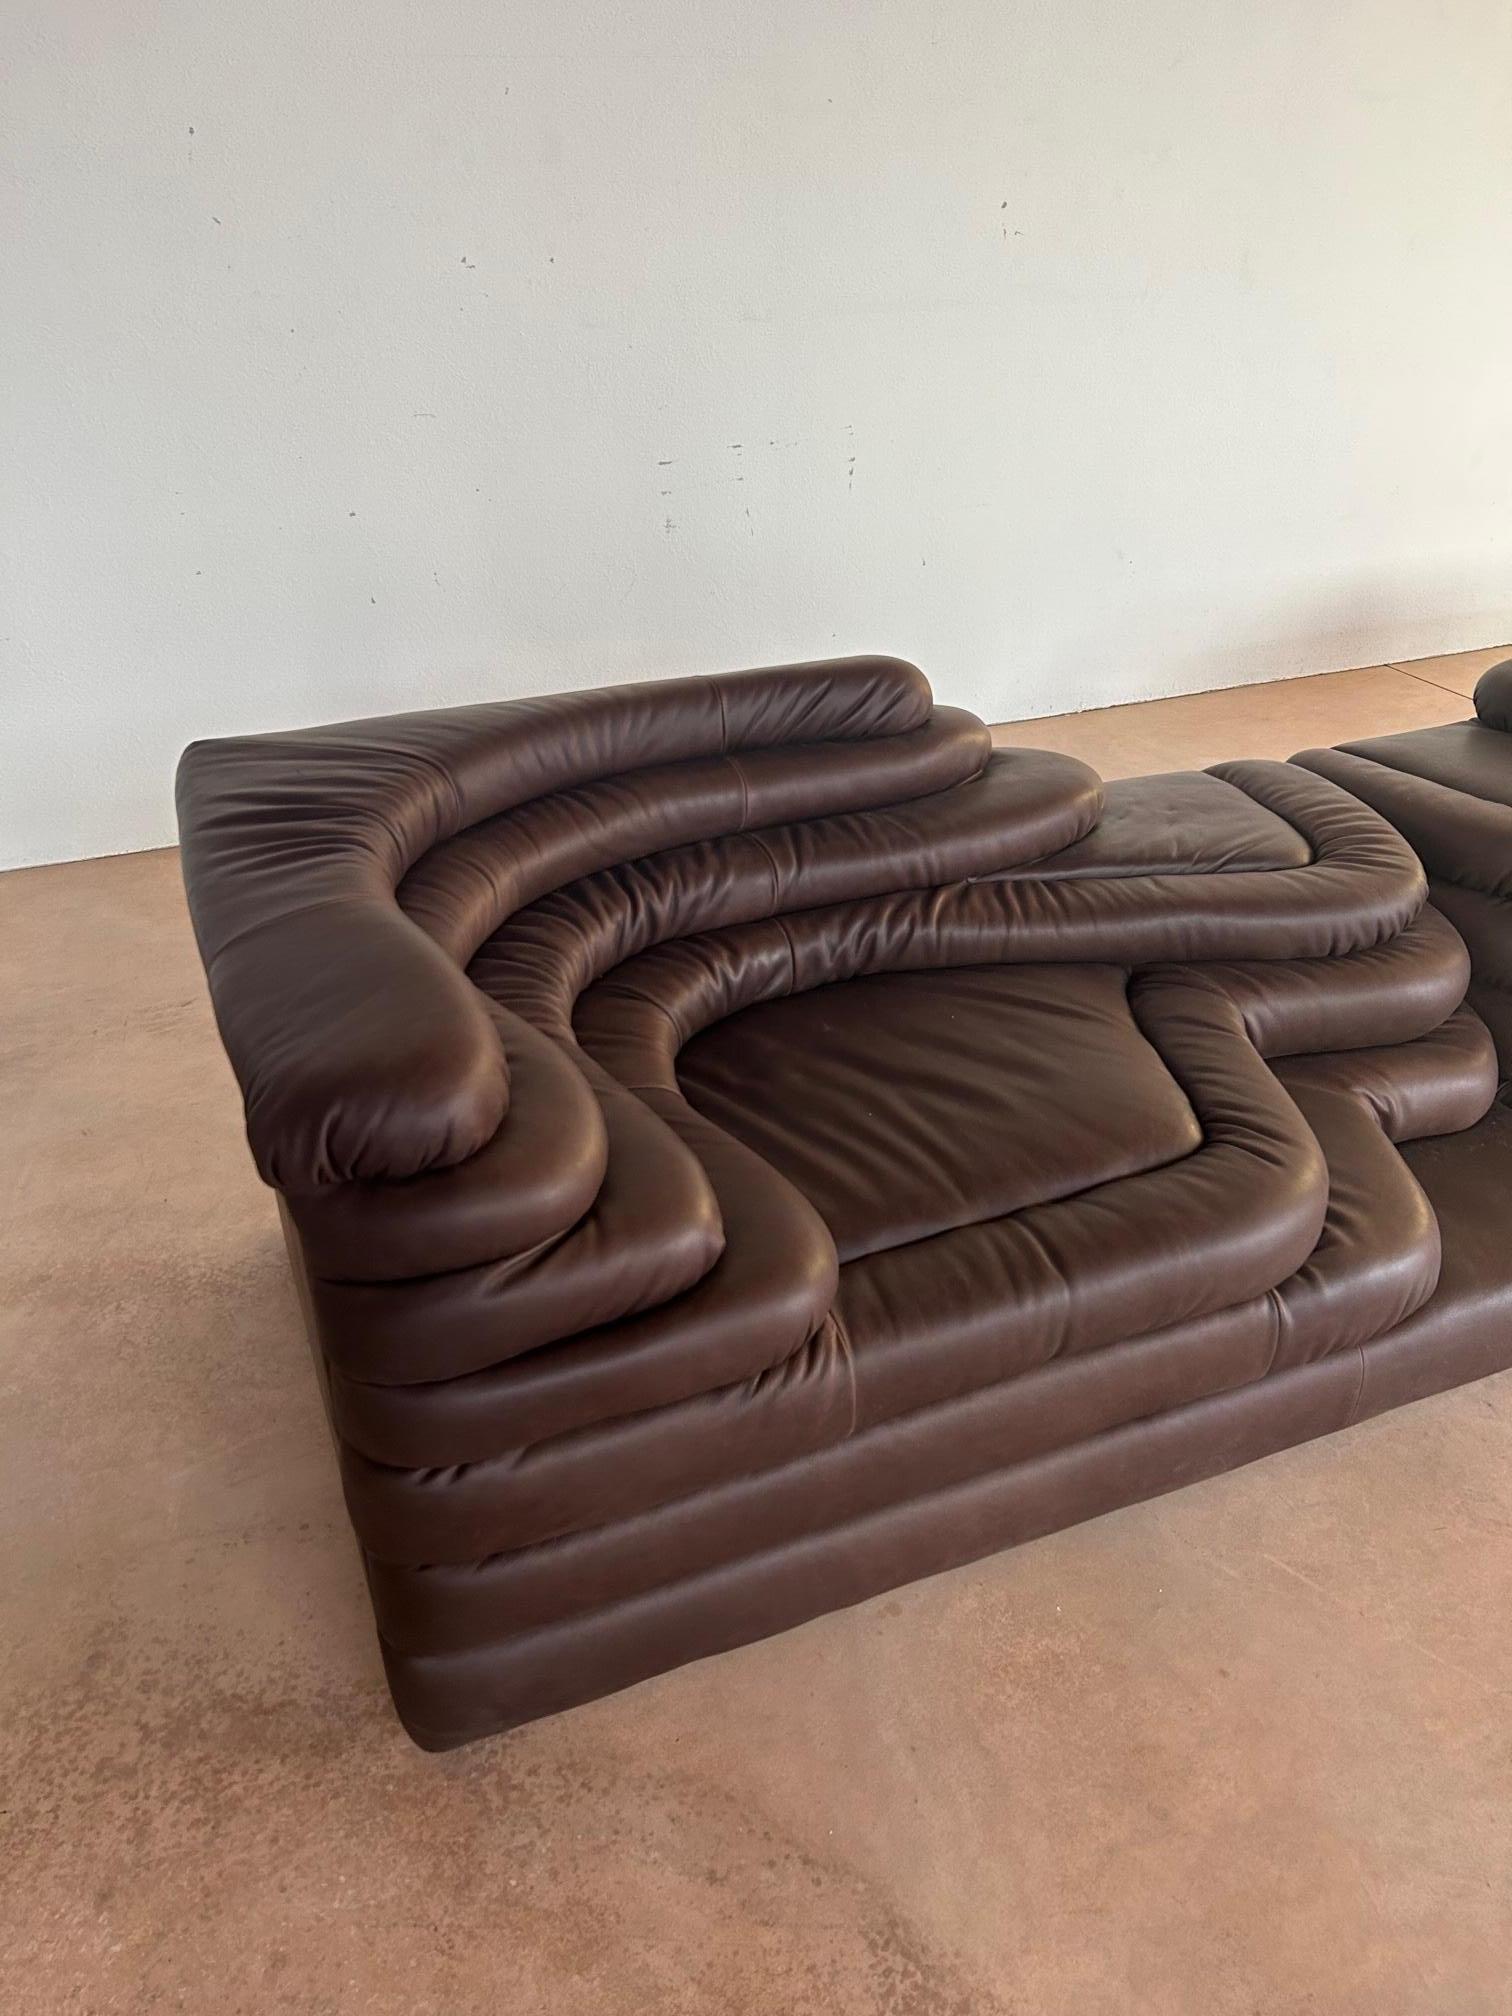 Paire de canapés DS-125 Terrazza en cuir marron foncé, conçus par Ubald Klug pour De Sede dans les années soixante-dix. Les formes inspirées de la Nature de ce canapé combinées à la grande qualité de construction en font une véritable œuvre d'art de